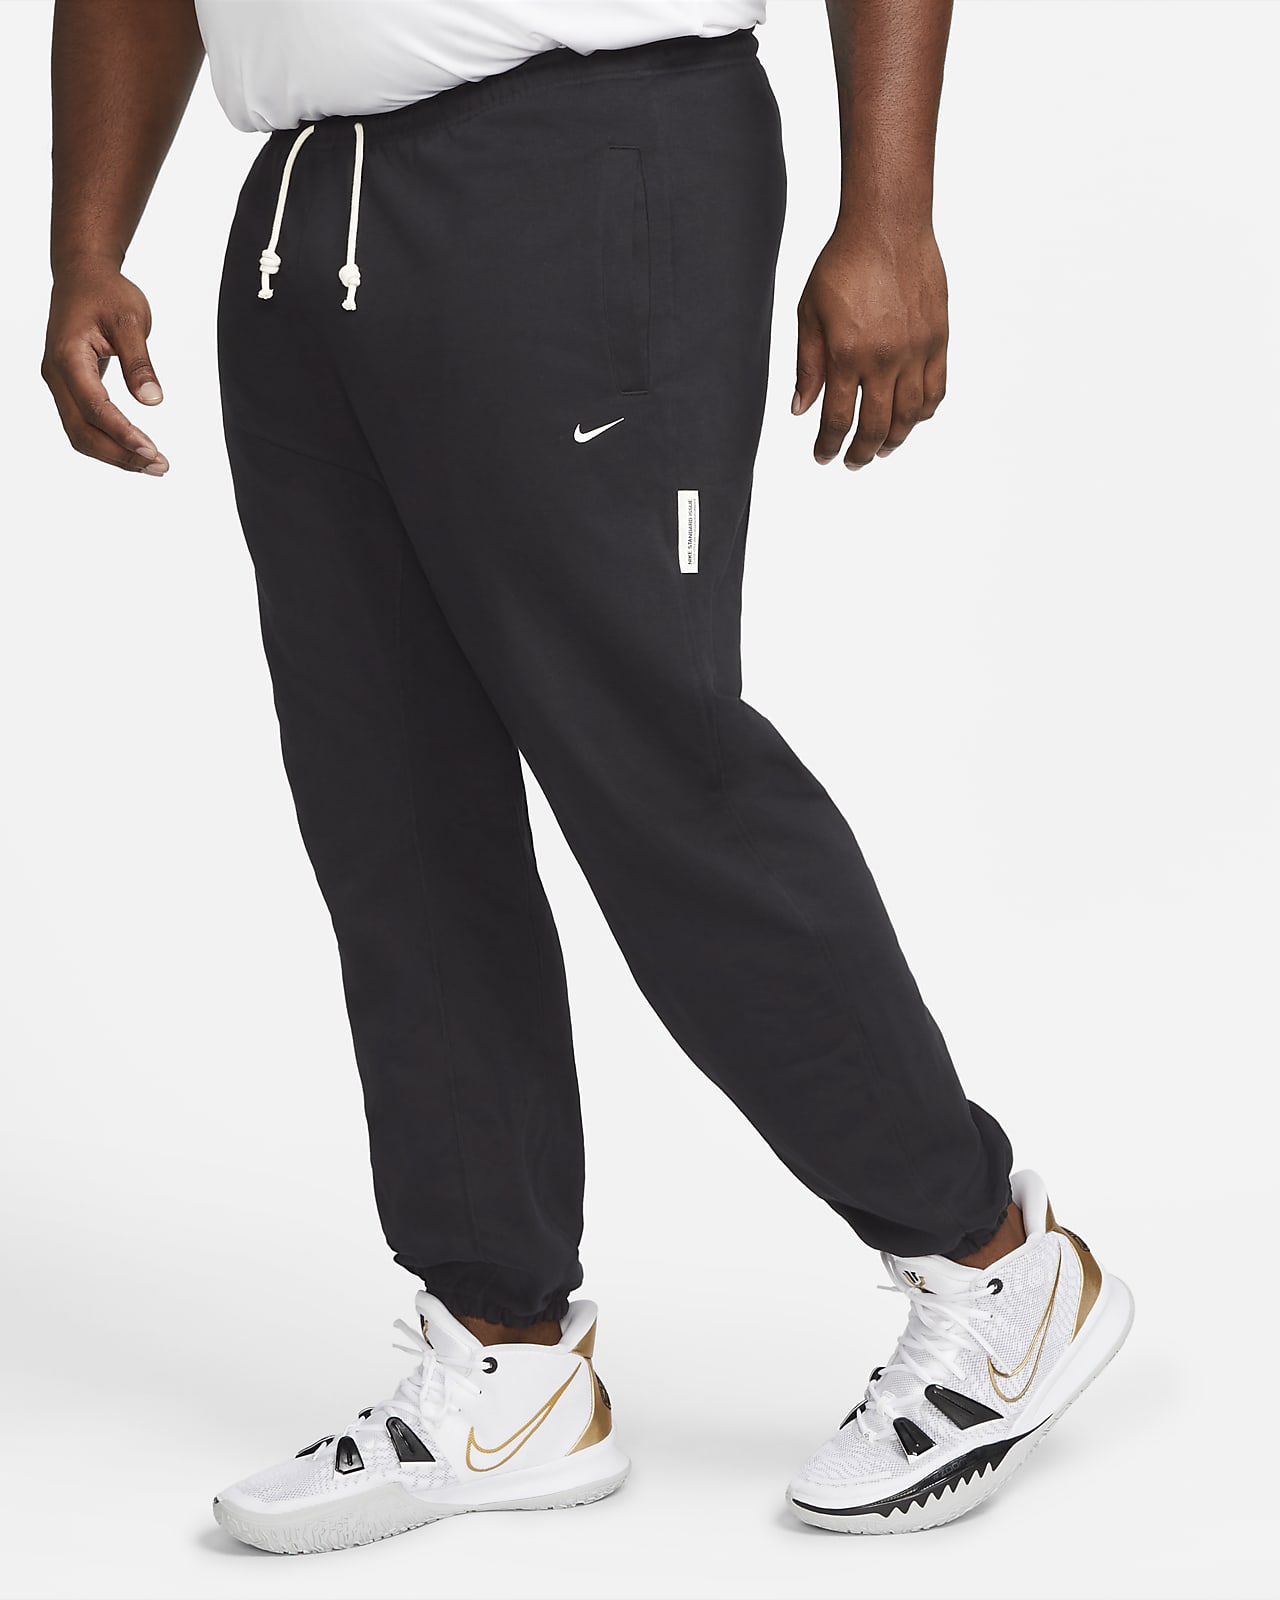 Nike NBA Standard Issue Men's Dri-FIT Pants – Miami HEAT Store